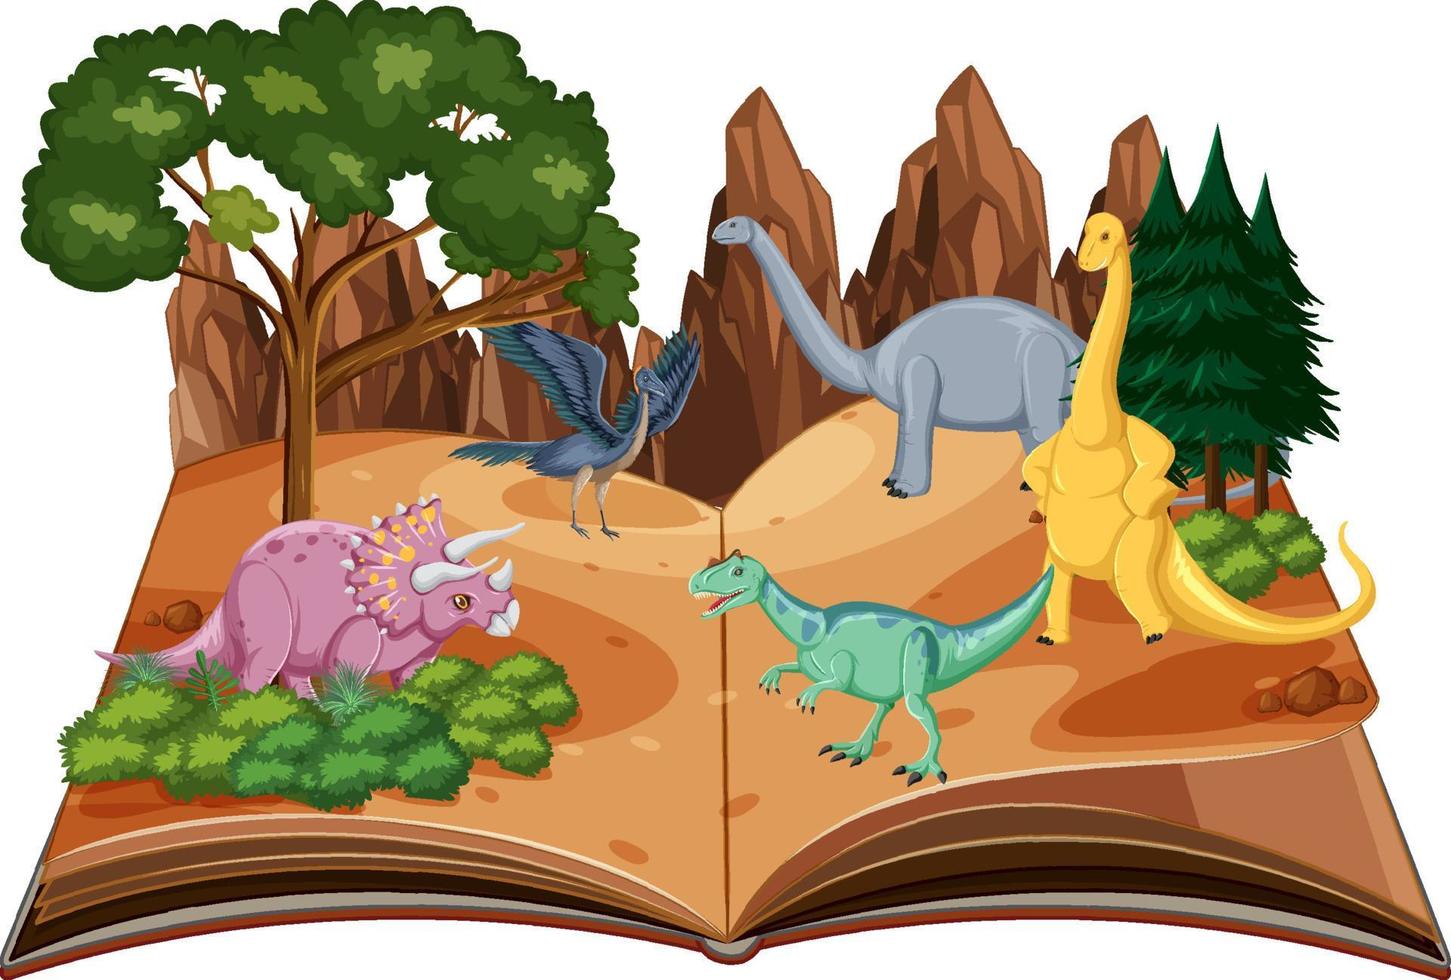 pop-upboek met natuurtafereel buiten en dinosaurus vector